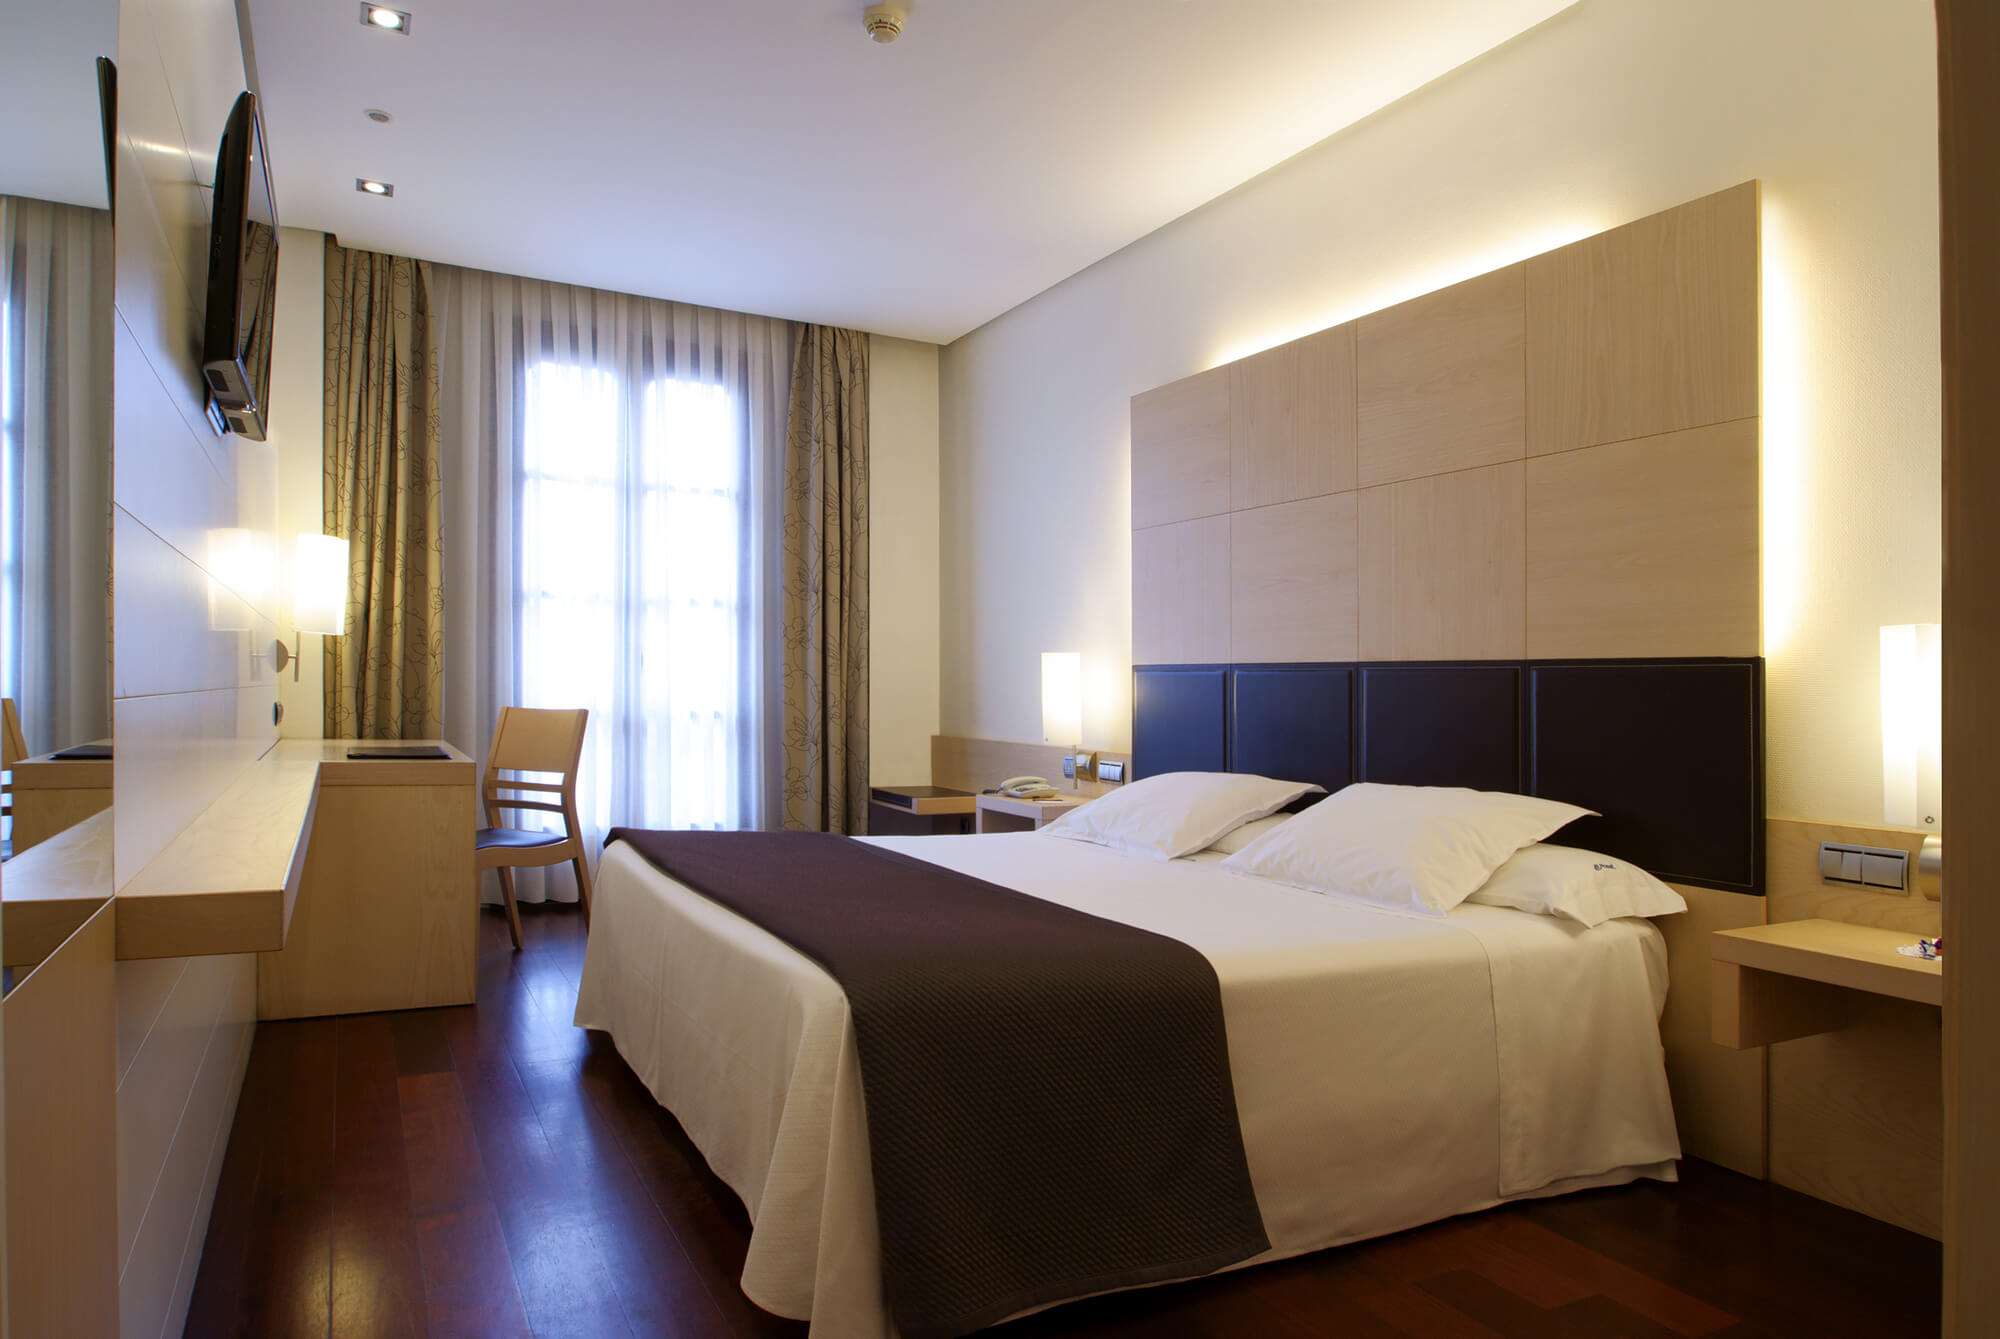 Habitación doble del céntrico Hotel Mozart en Valladolid